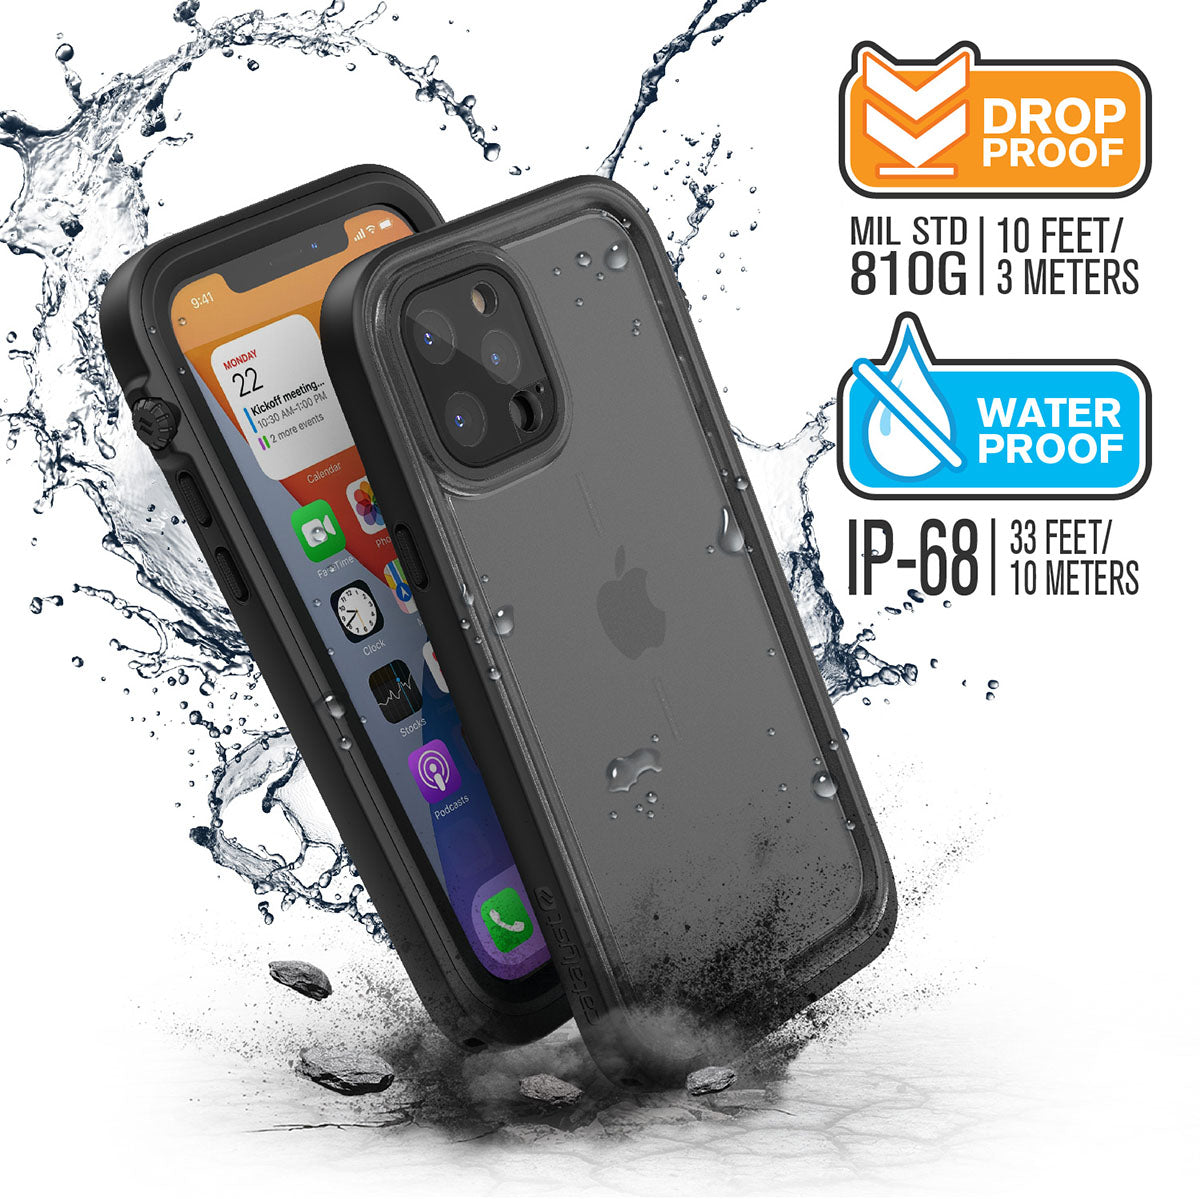 Catalyst iPhone 12 waterproof case total protection drop proof water proof Text reads MIL STD 810G 10 feet-3 meters Water proof IP-68 33/feet 10 meters